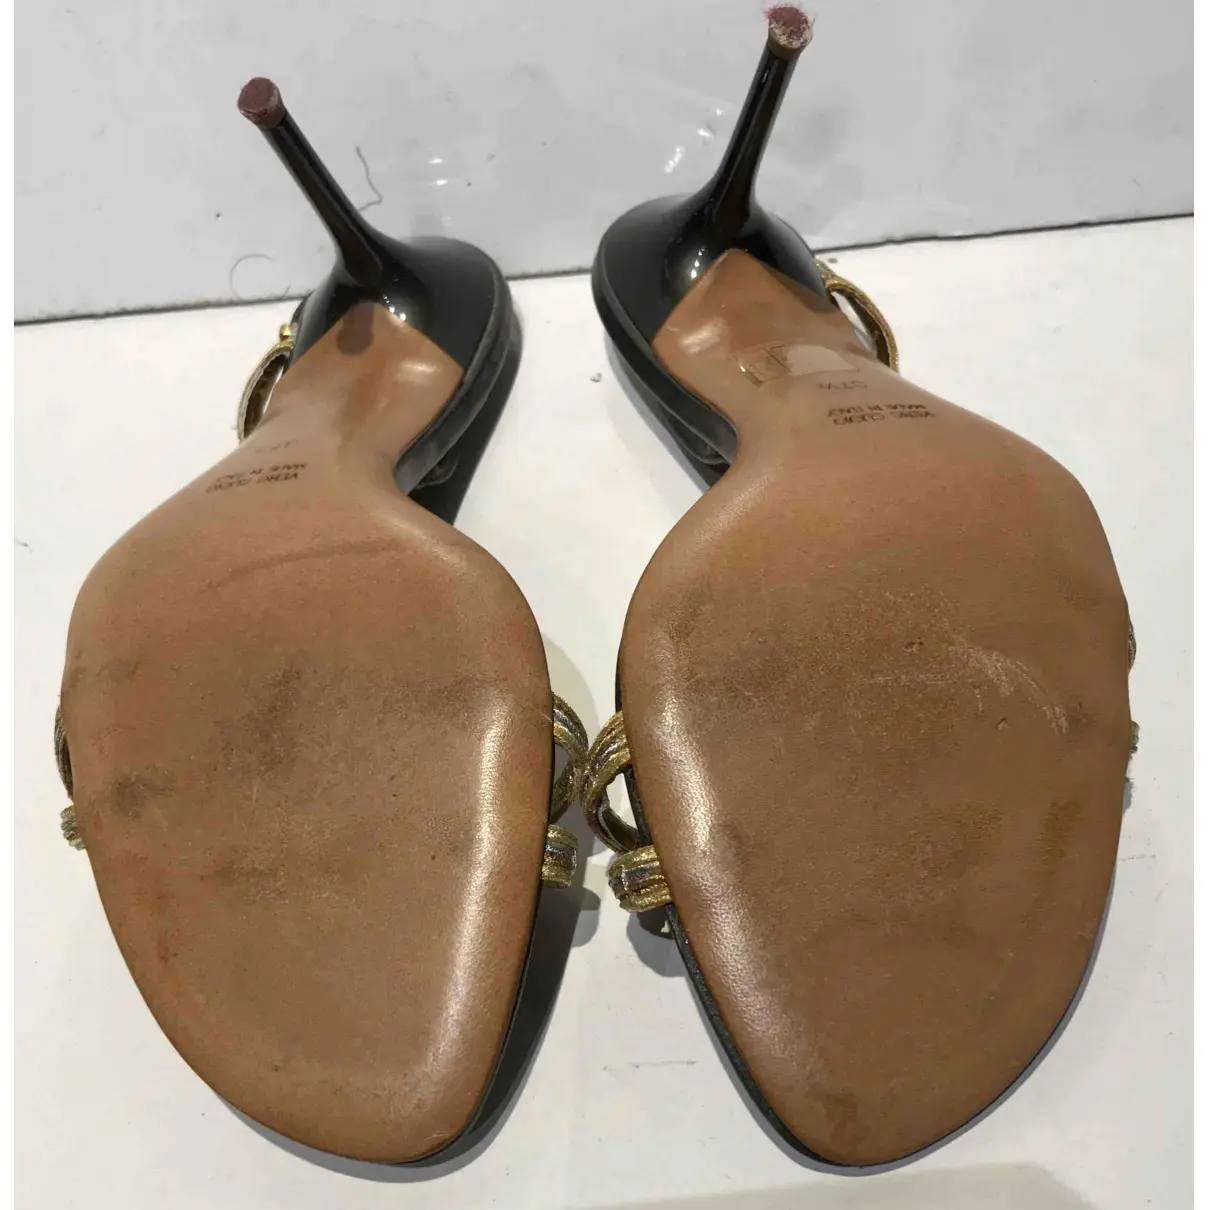 Leather sandals Rene Caovilla